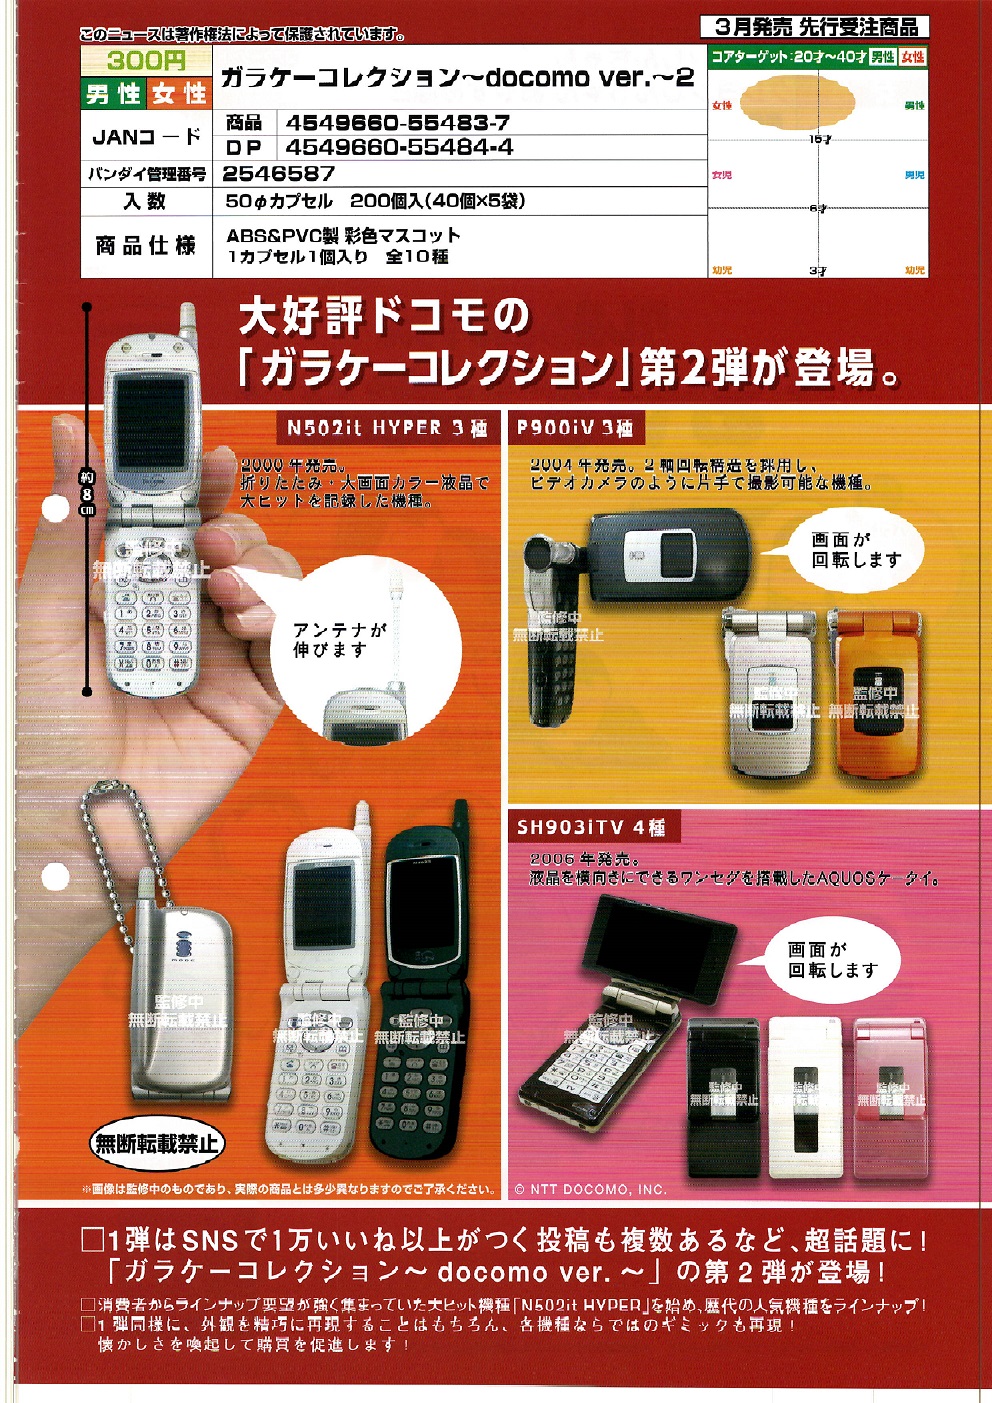 【A】300日元扭蛋 仿真翻盖手机 Docomo Ver.2 全10种 (1袋40个) 554837